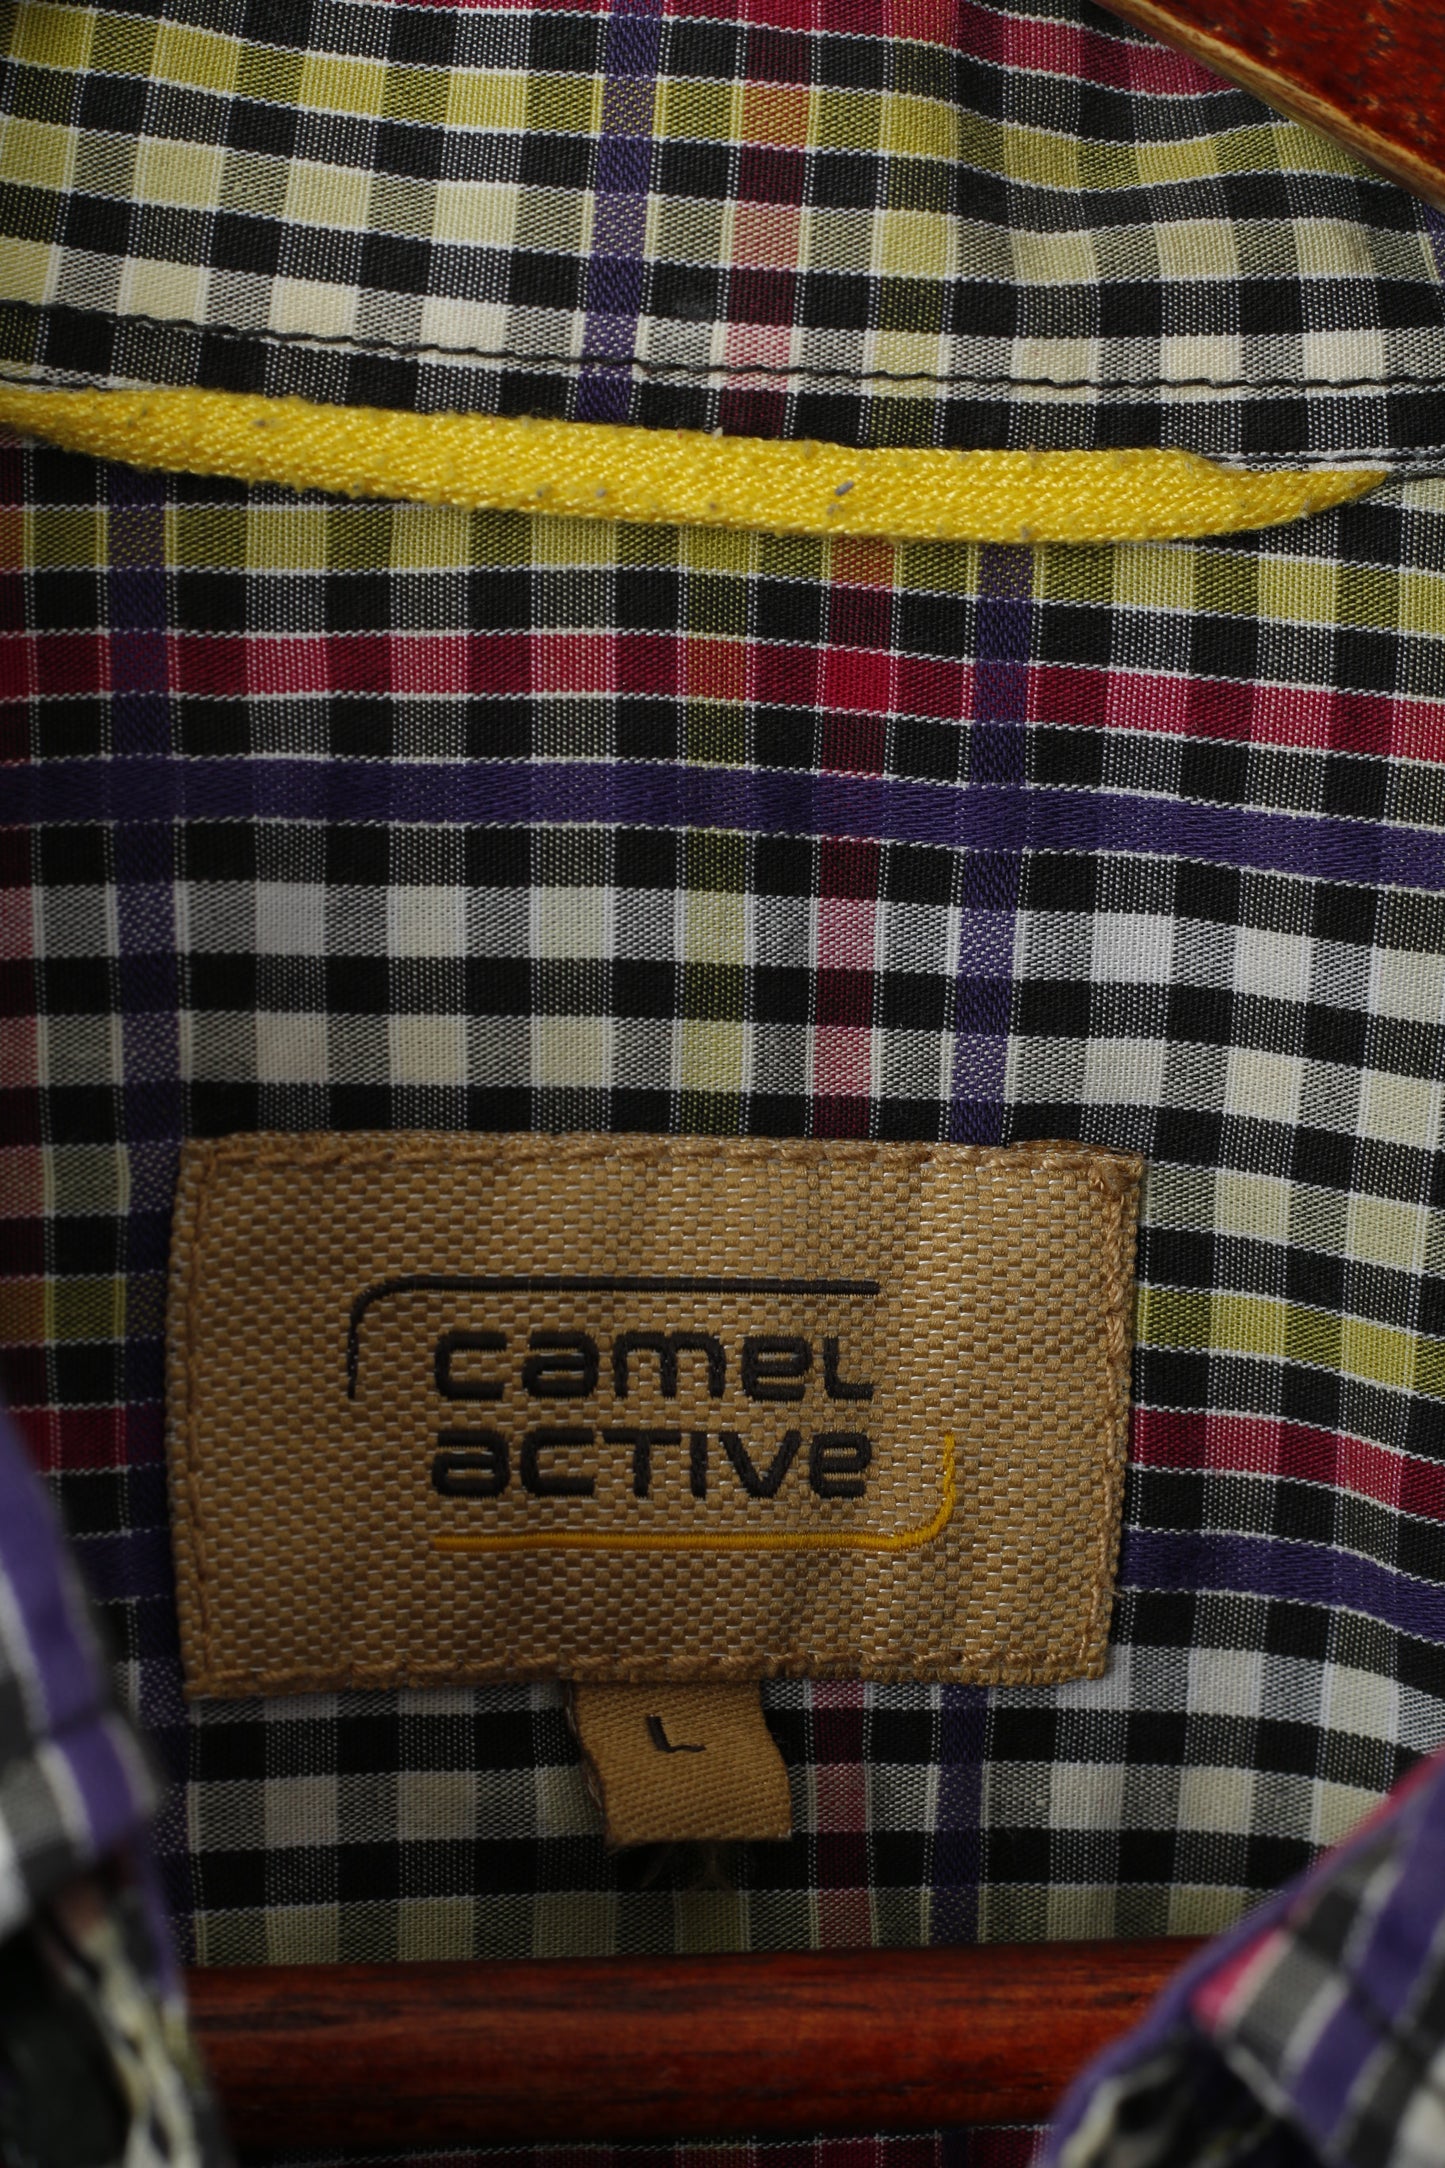 Camel Active Men L Casual Shirt Purple Check Cotton Long Sleeve Check Button Down Collar Top